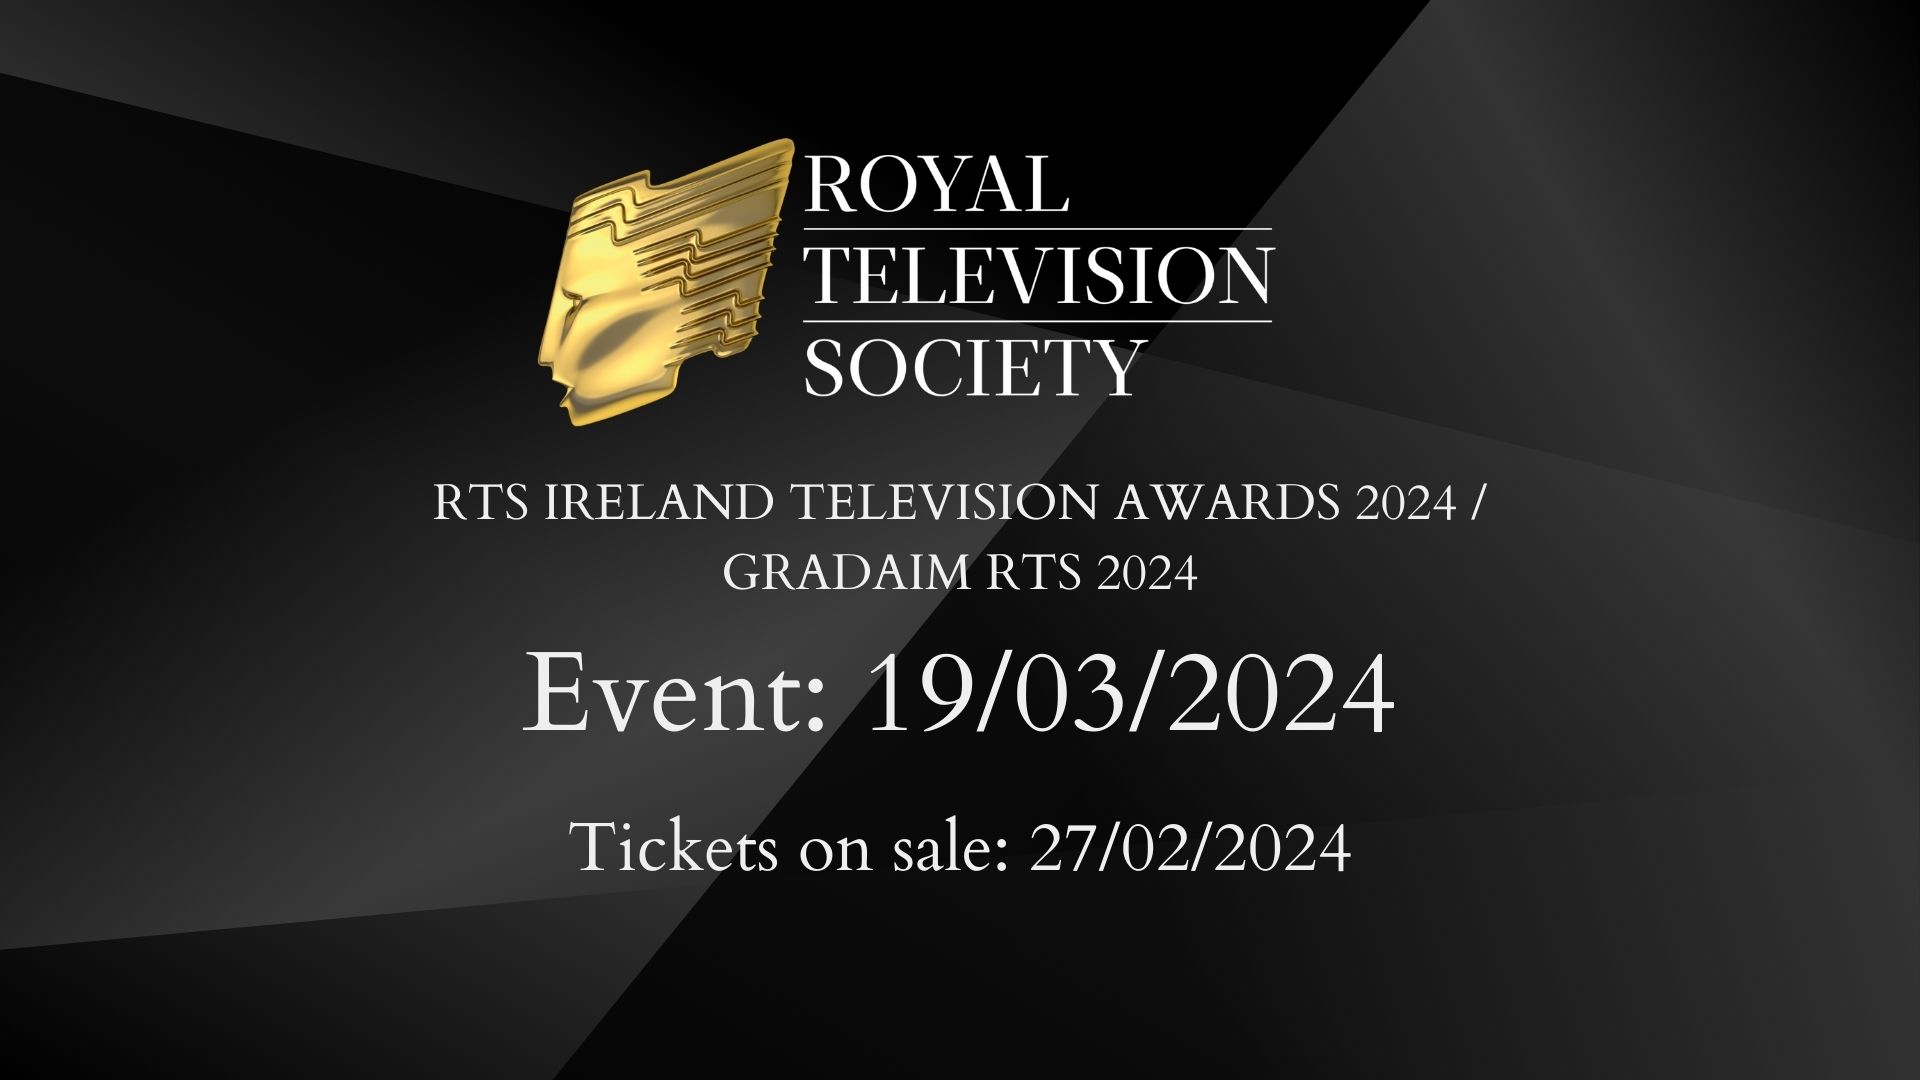 The RTS Ireland Television Awards 2024 Gradaim RTS 2024 Royal